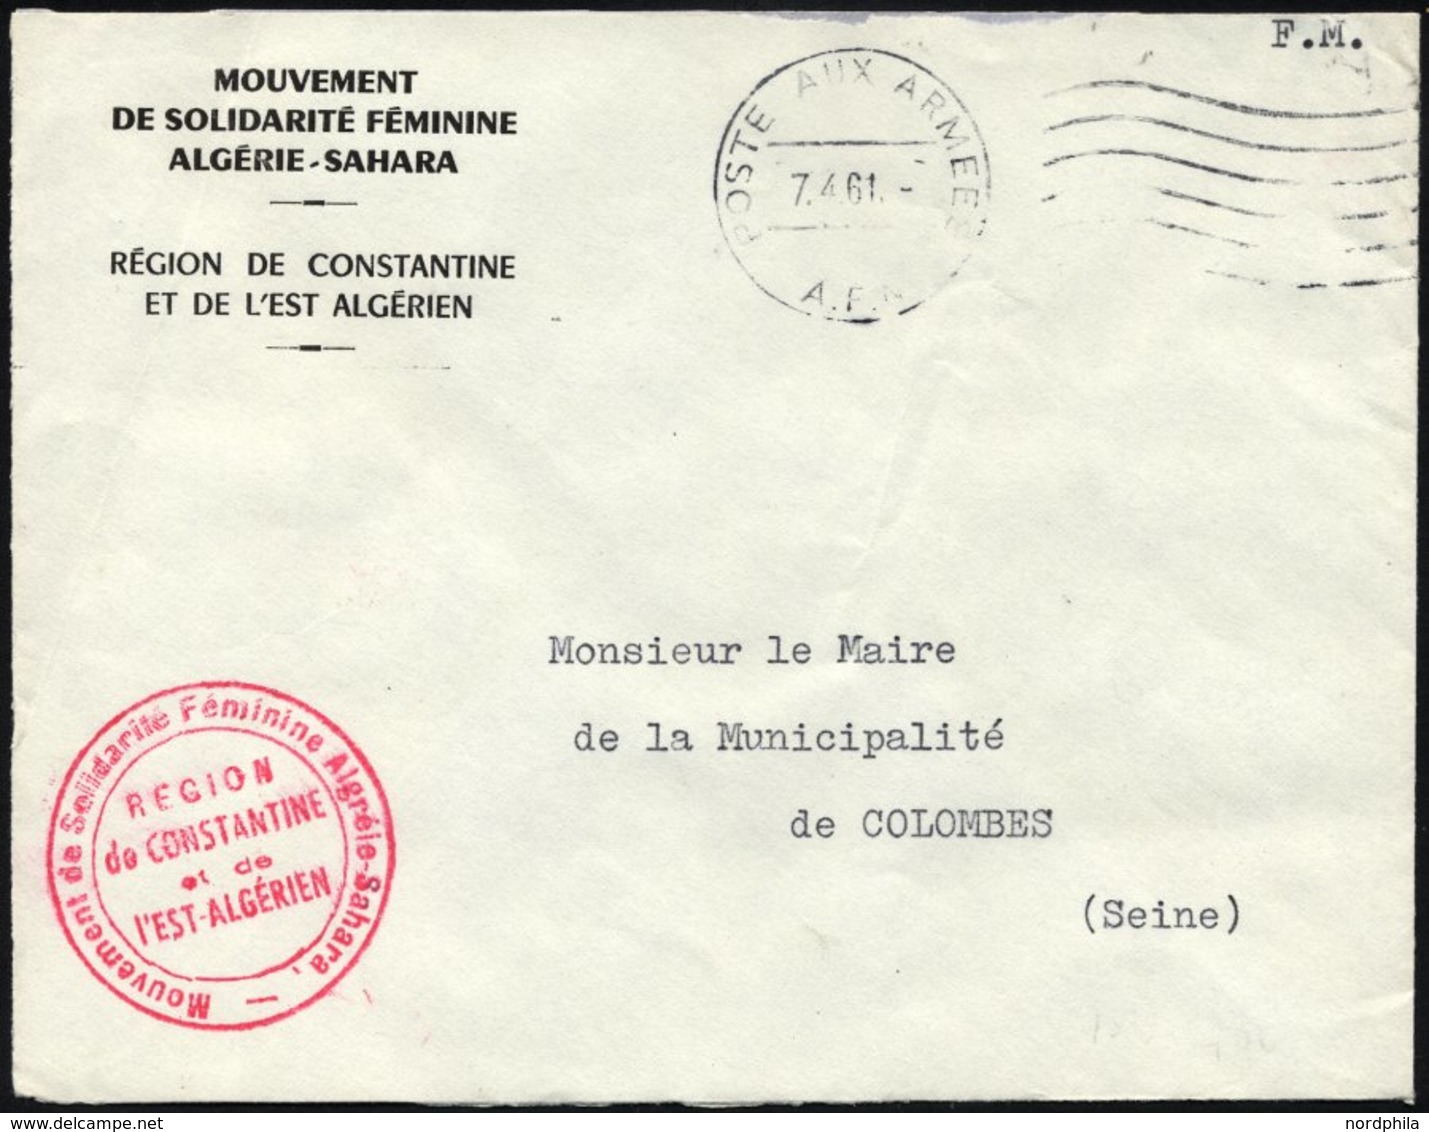 FRANKREICH FELDPOST 1961, K1 POSTE AUX ARMEES/A.F.N. Auf Armeebrief Der Frauensolidaritätsbewegung Der Sahara-Region Alg - War Stamps